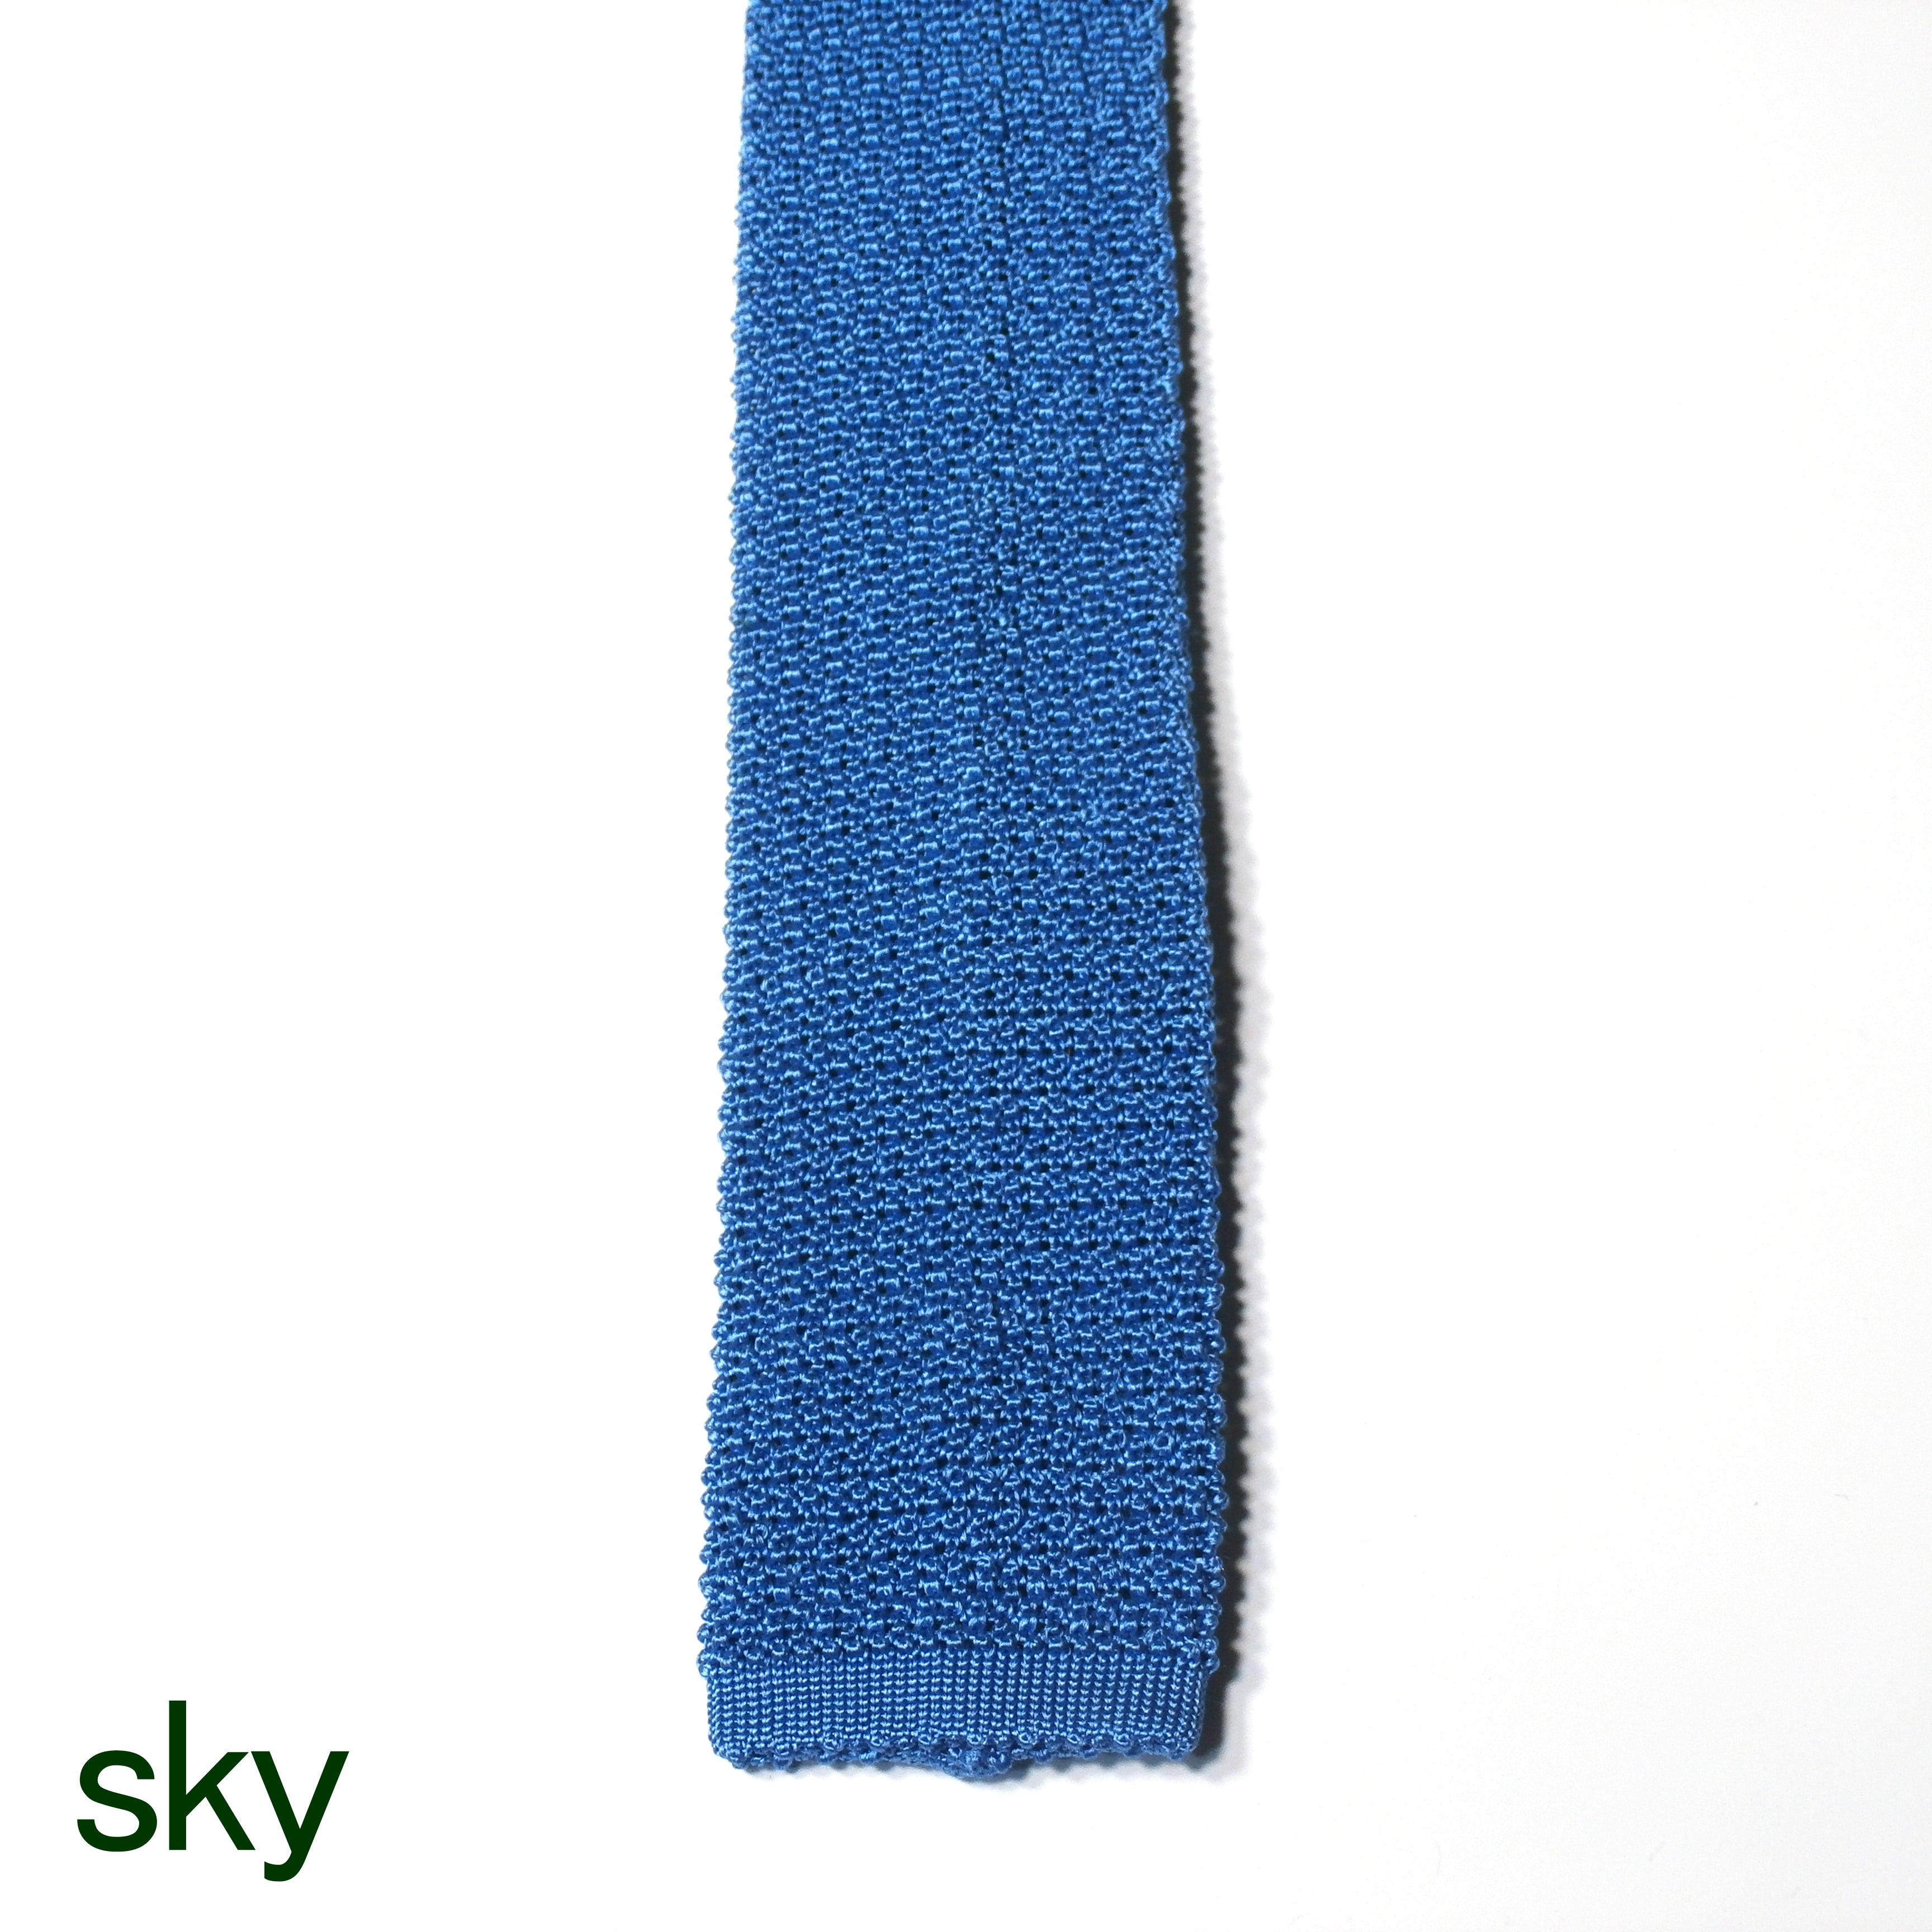 Knitted Tie = 100% silk =